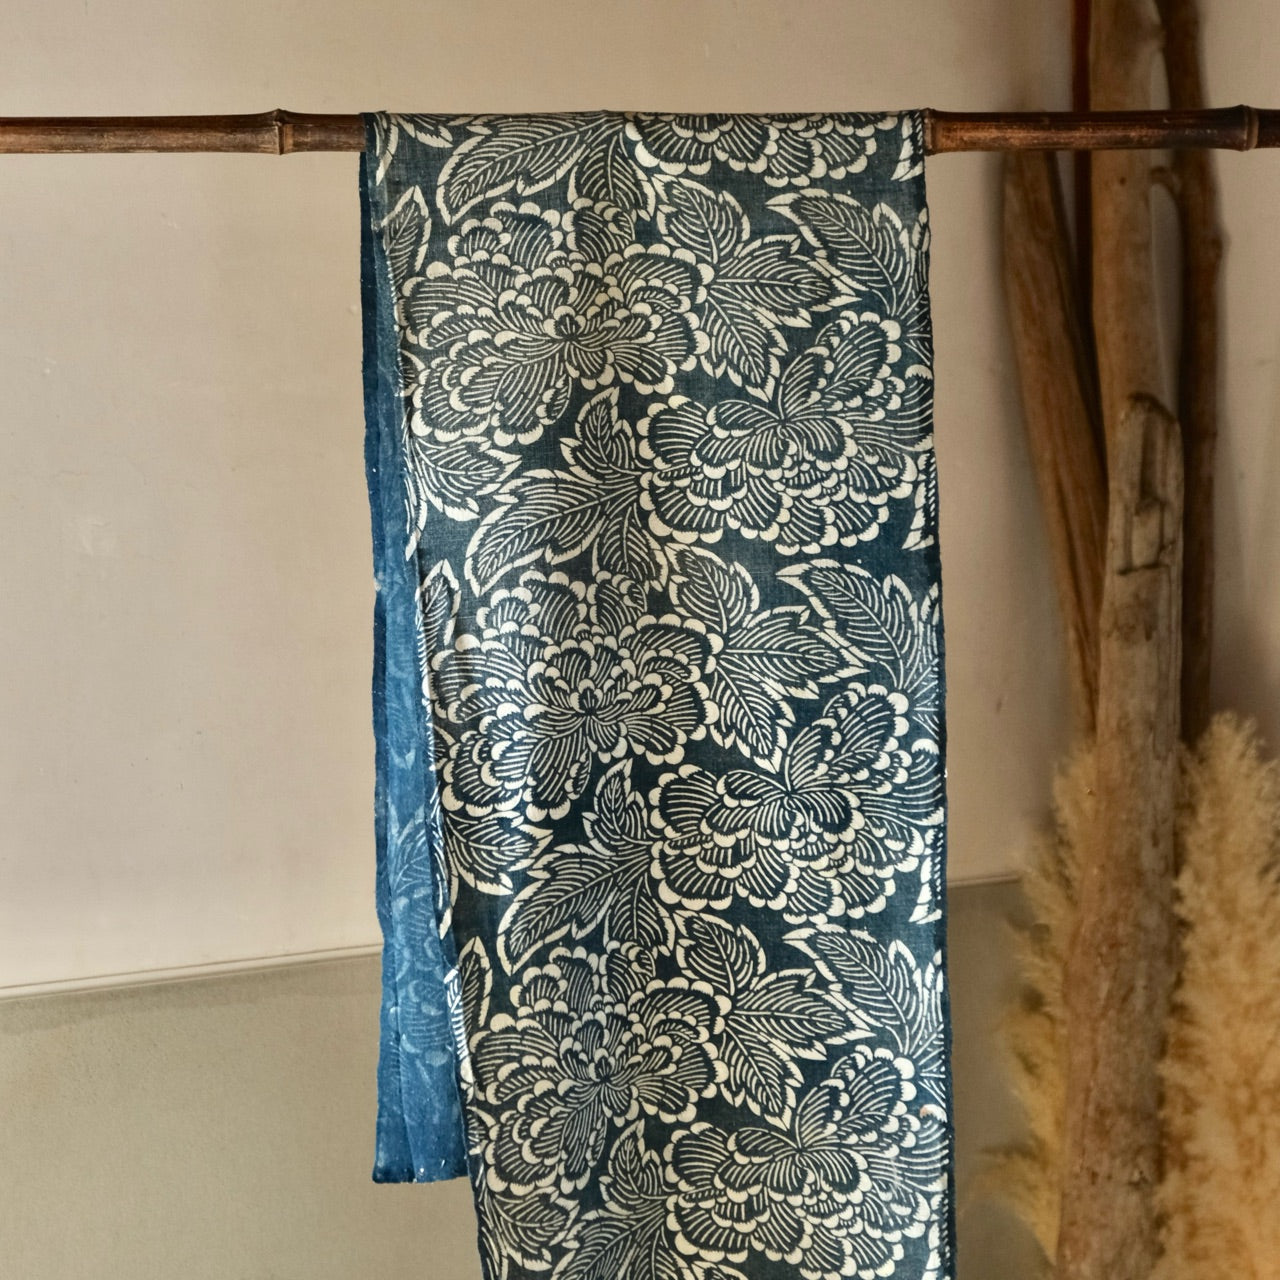 Vintage Japanese Boro Indigo-dyed Katazome Fabric (textile)with Peony pattern